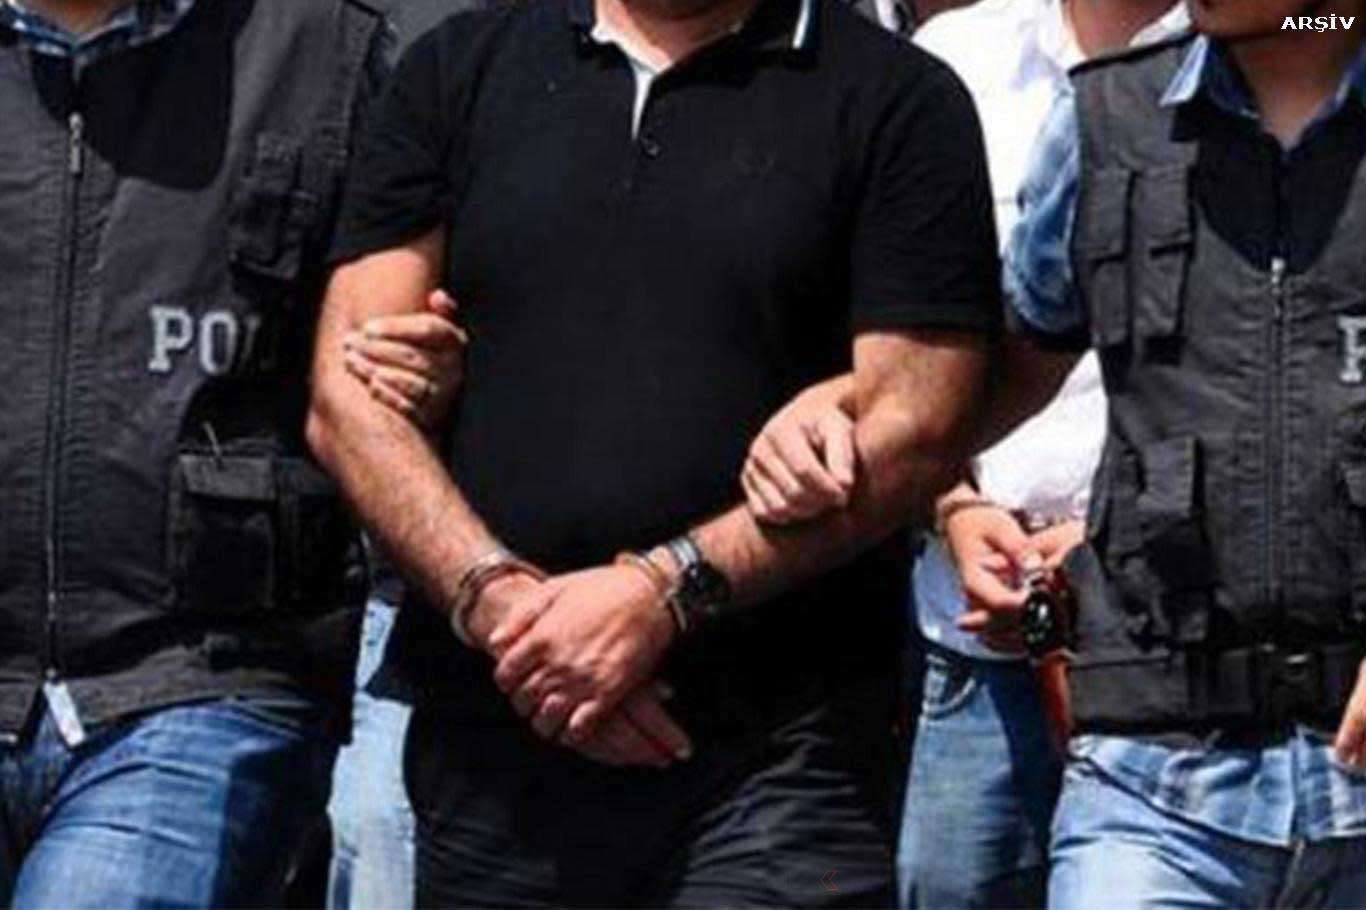 Gaziantep’te aranma kaydı bulunan 2 şahıs tutuklandı